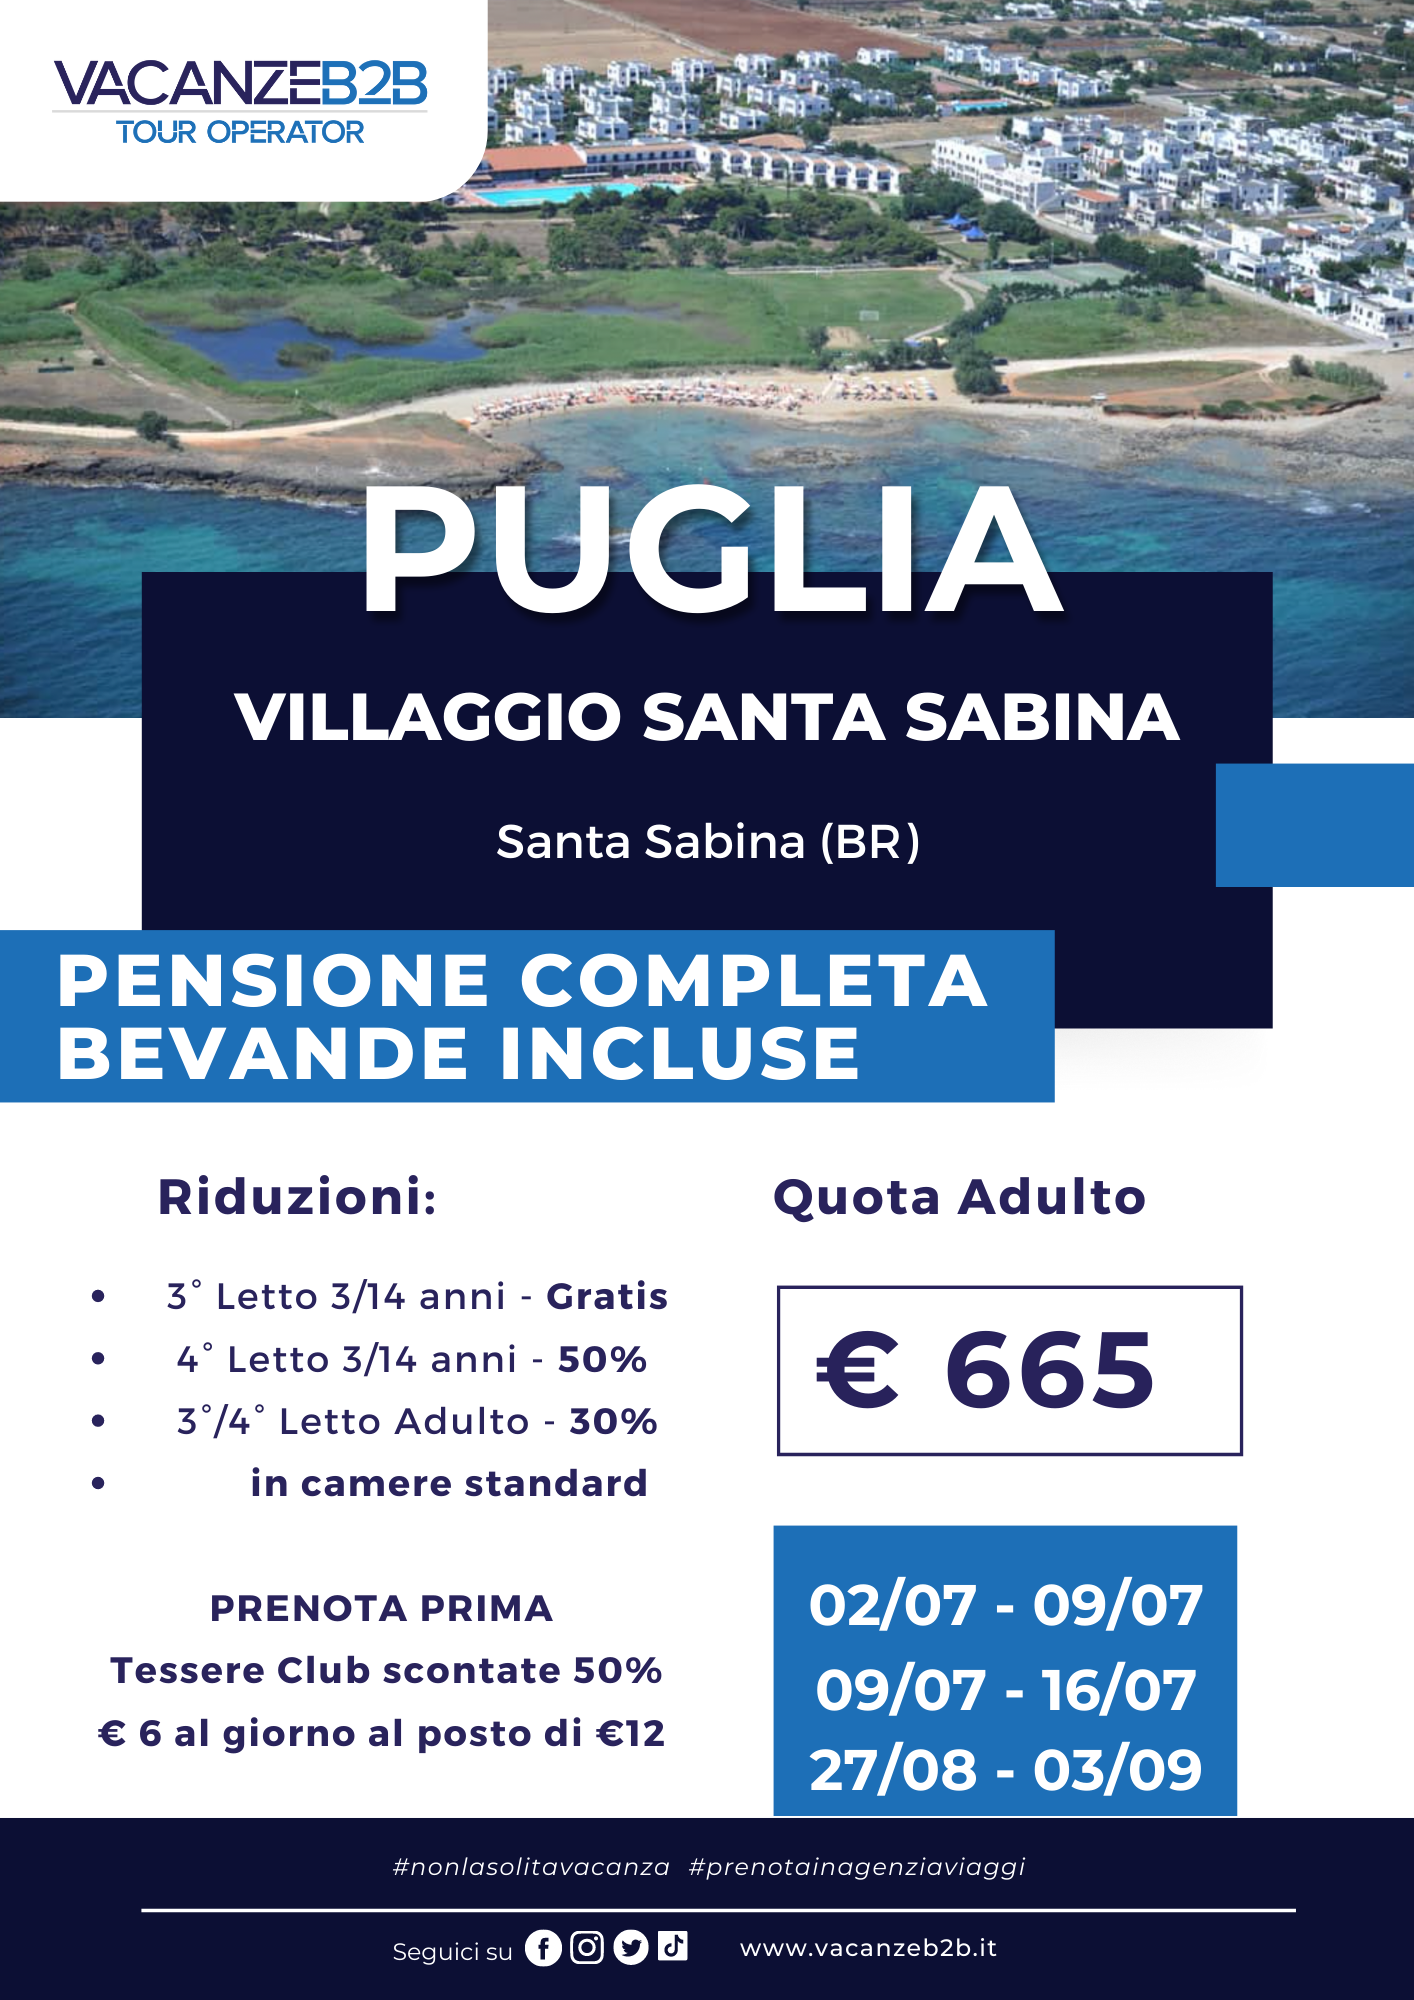 Puglia Villaggio Santa Sabina 